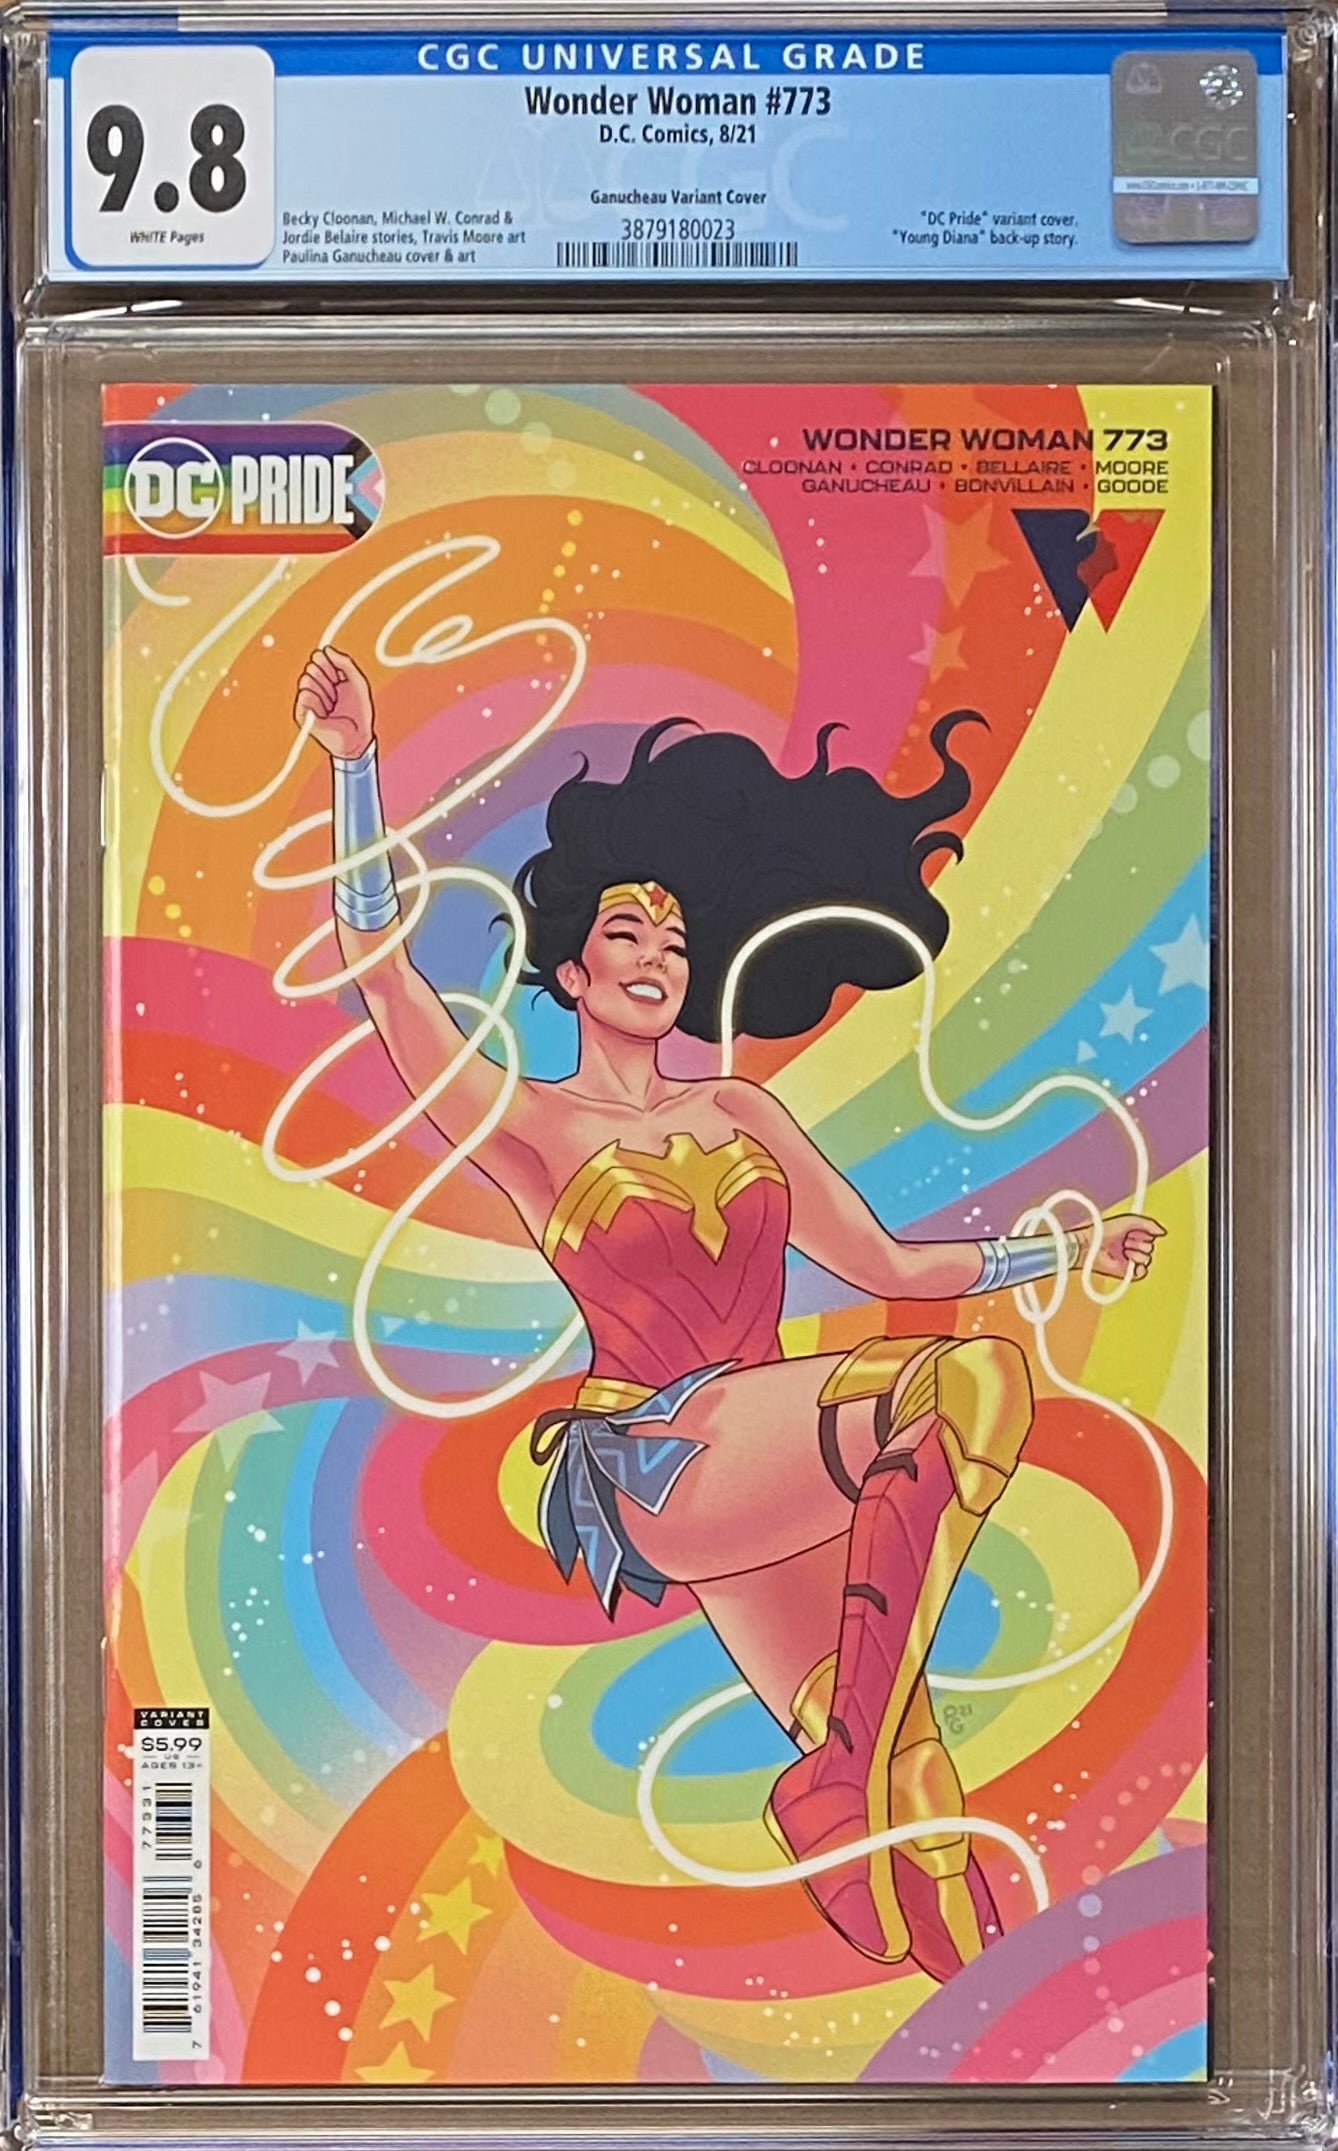 Wonder Woman #773 "Pride" Variant CGC 9.8